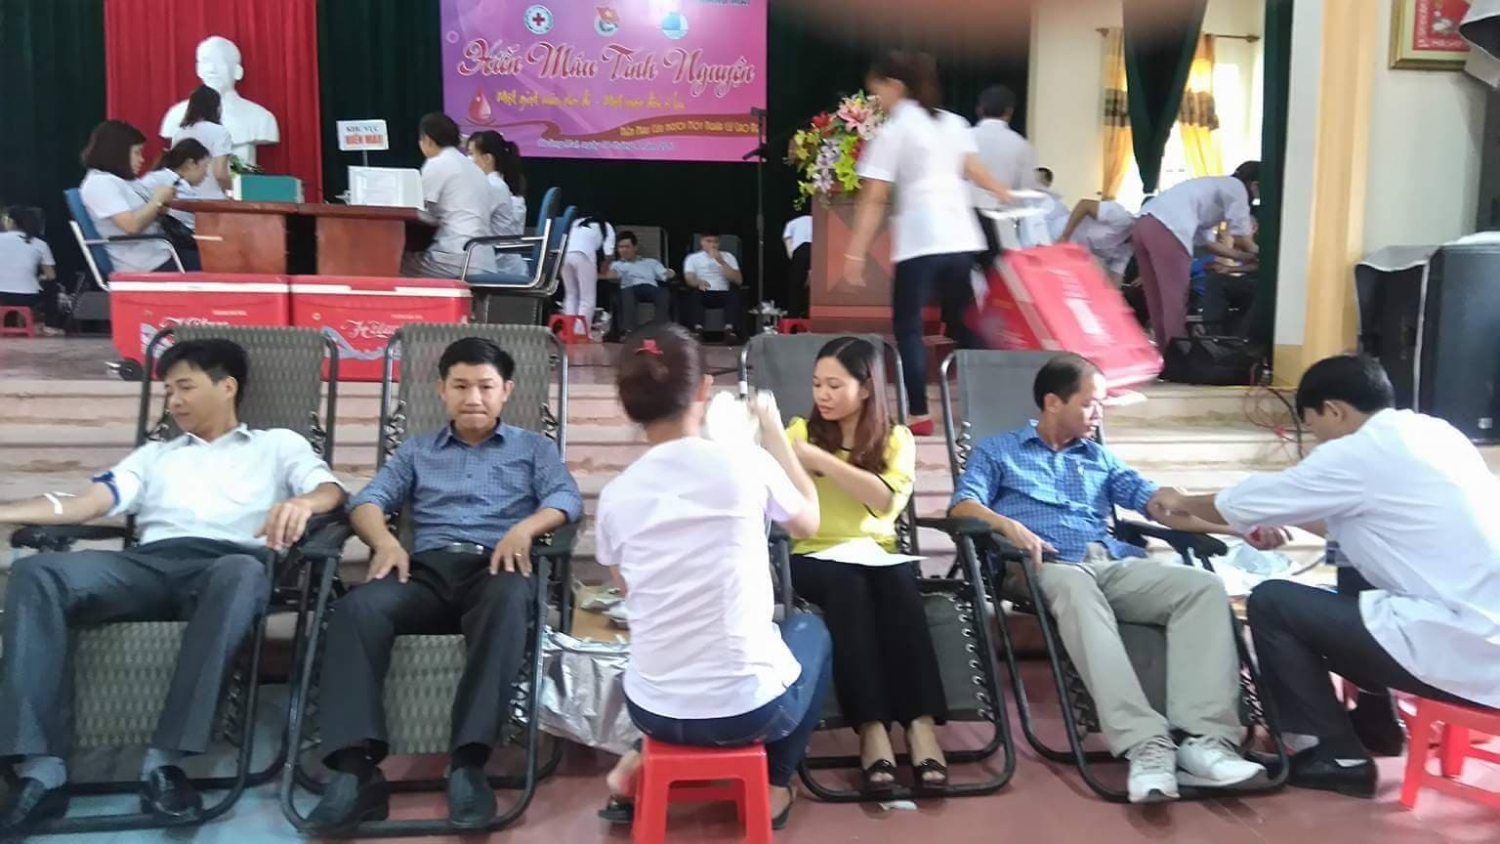 Anh Nguyễn Bá Thành, Nguyễn Bá Bình, Nguyễn Bá Hoàng, chị Nguyễn Thị Phương là đoàn viên công đoàn cơ quan phường tham gia hiến máu năm 2018